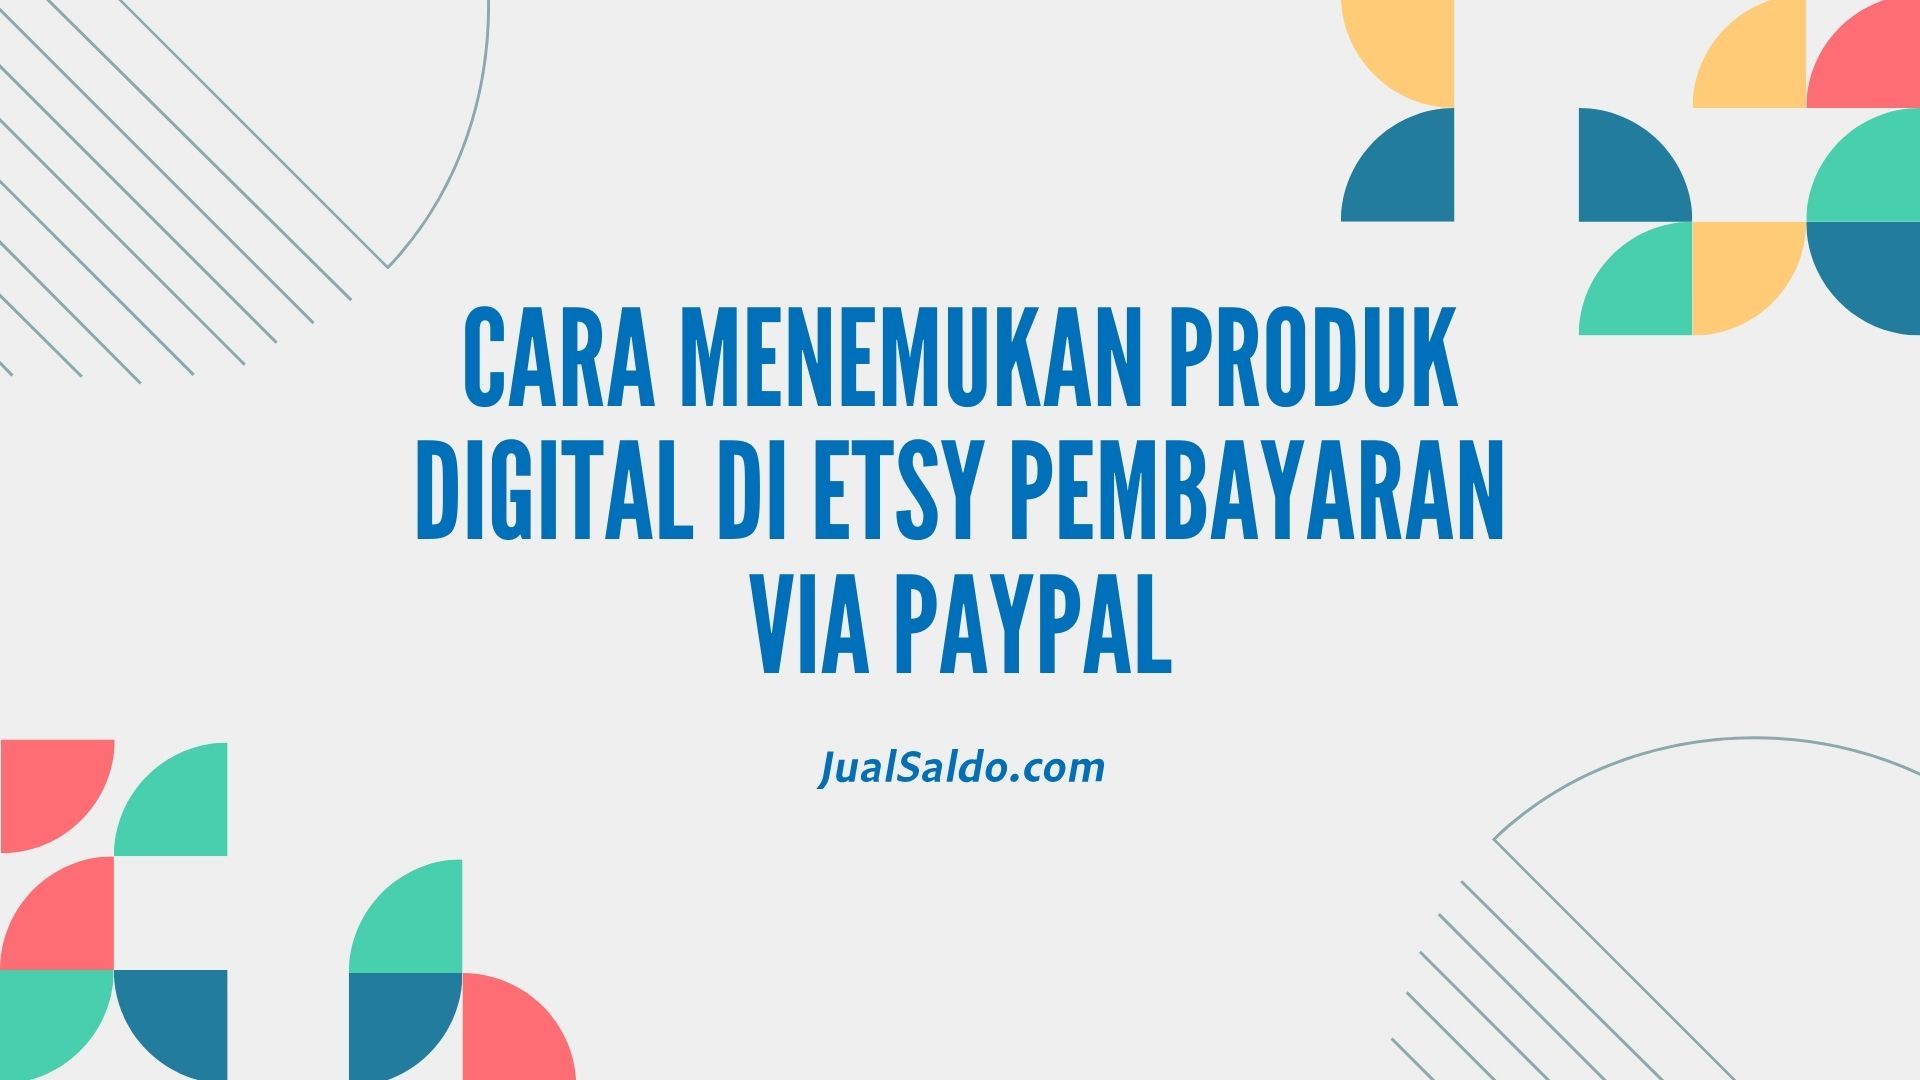 Cara Menemukan Produk Digital di Etsy pembayaran via PayPal